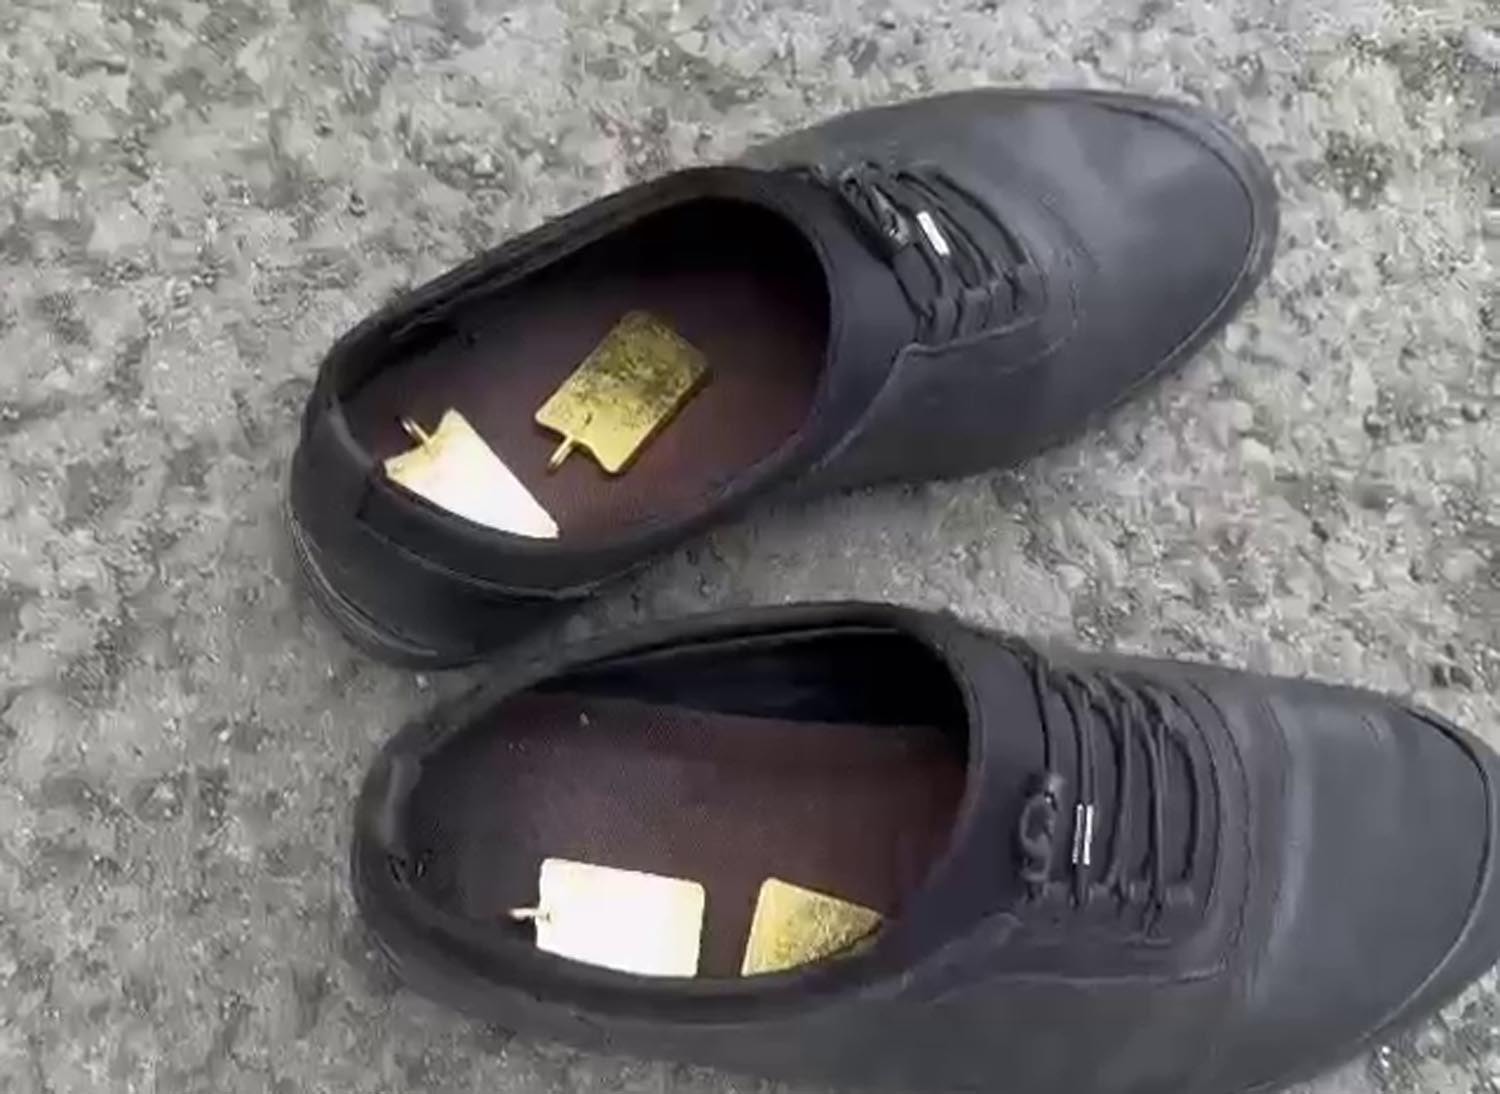 Внутри обуви двух армянских граждан были найдены слитки золота